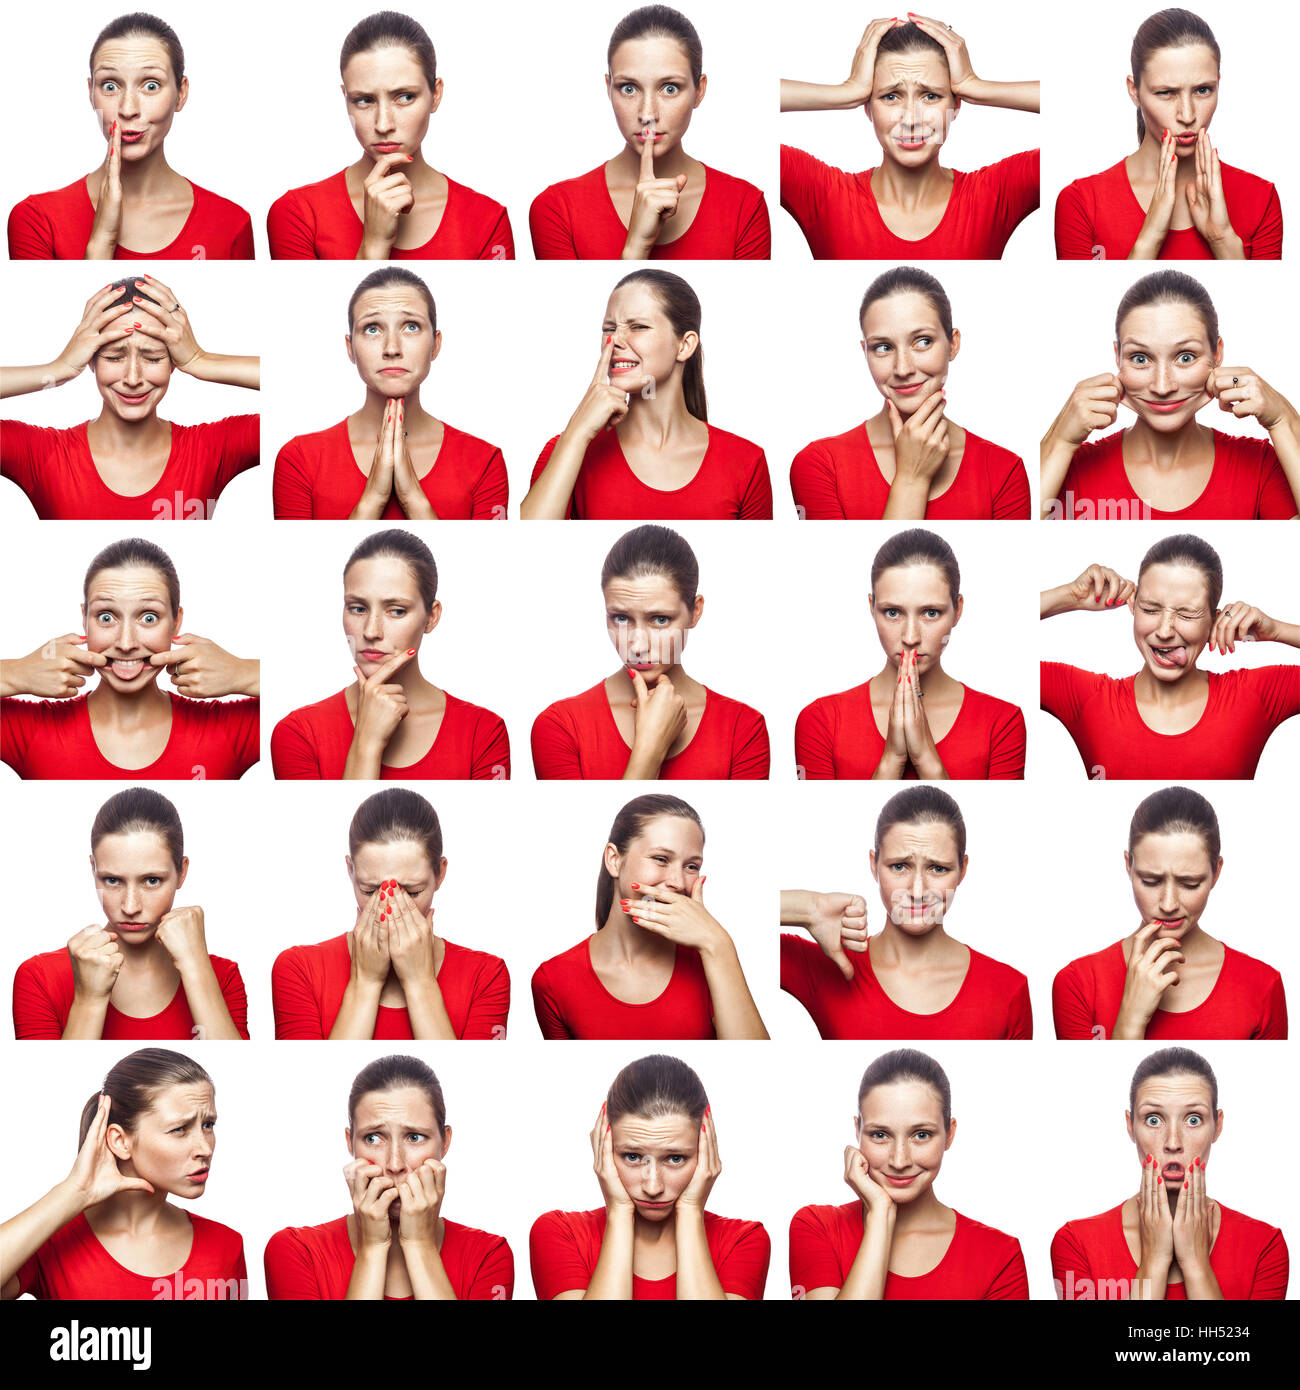 Mosaik von Frau mit Sommersprossen mit dem Ausdruck unterschiedliche Emotionen ausdrücken. Die Frau mit roten T-shirt mit 16 verschiedene Emotionen. Stockfoto